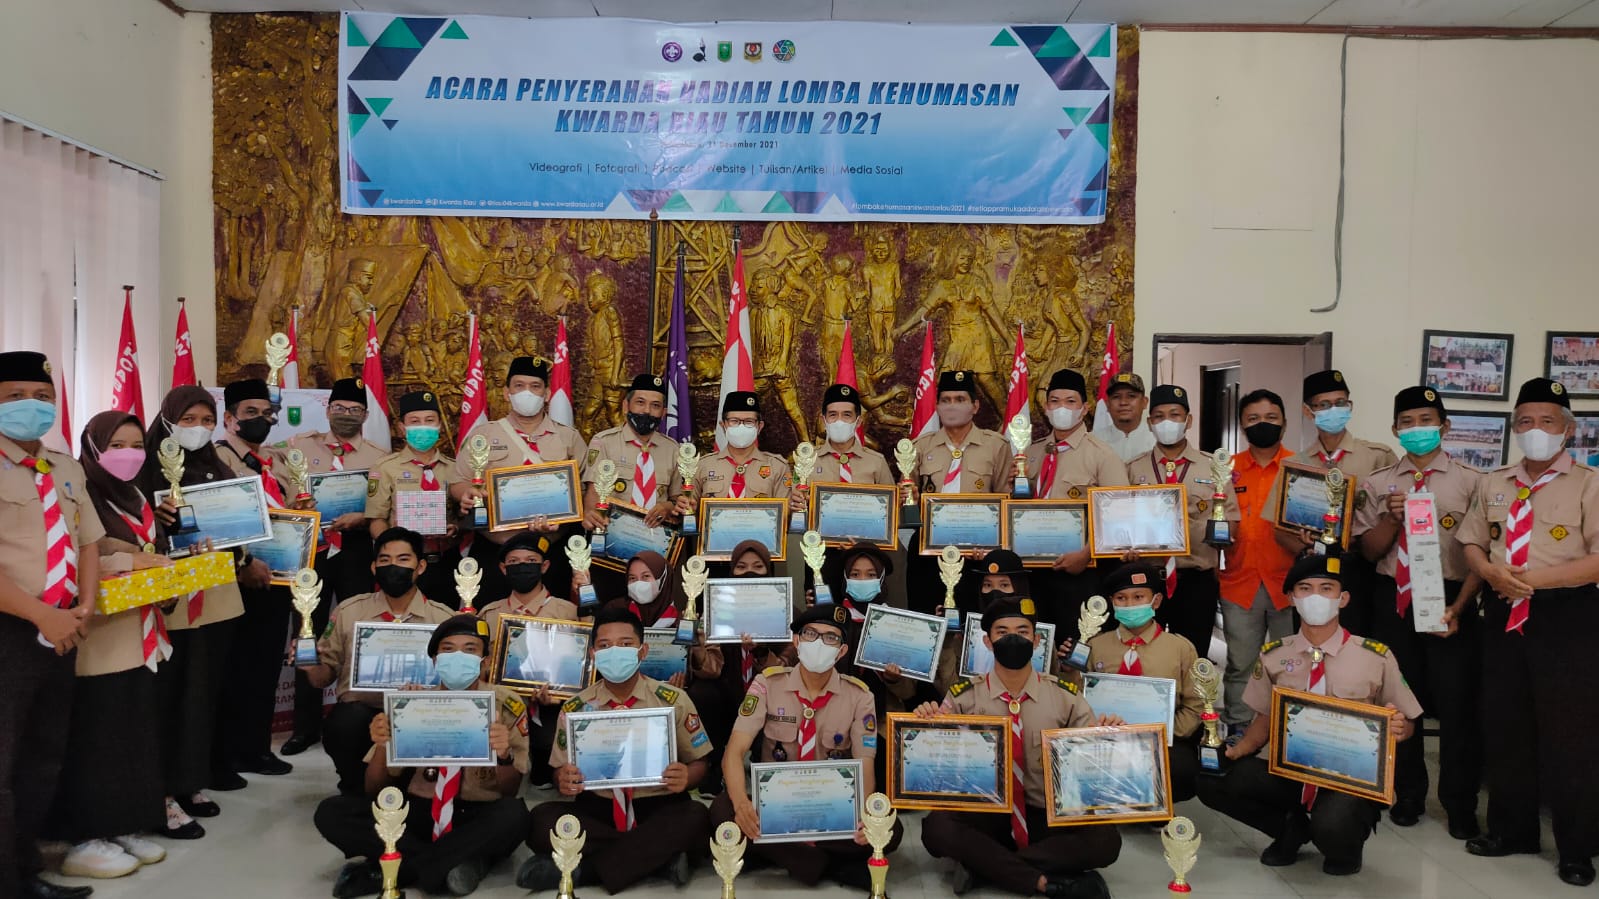 Akhir tahun 2021, Kwarda Riau Serahkan Hadiah Kepada Pemenang Lomba Kehumasan